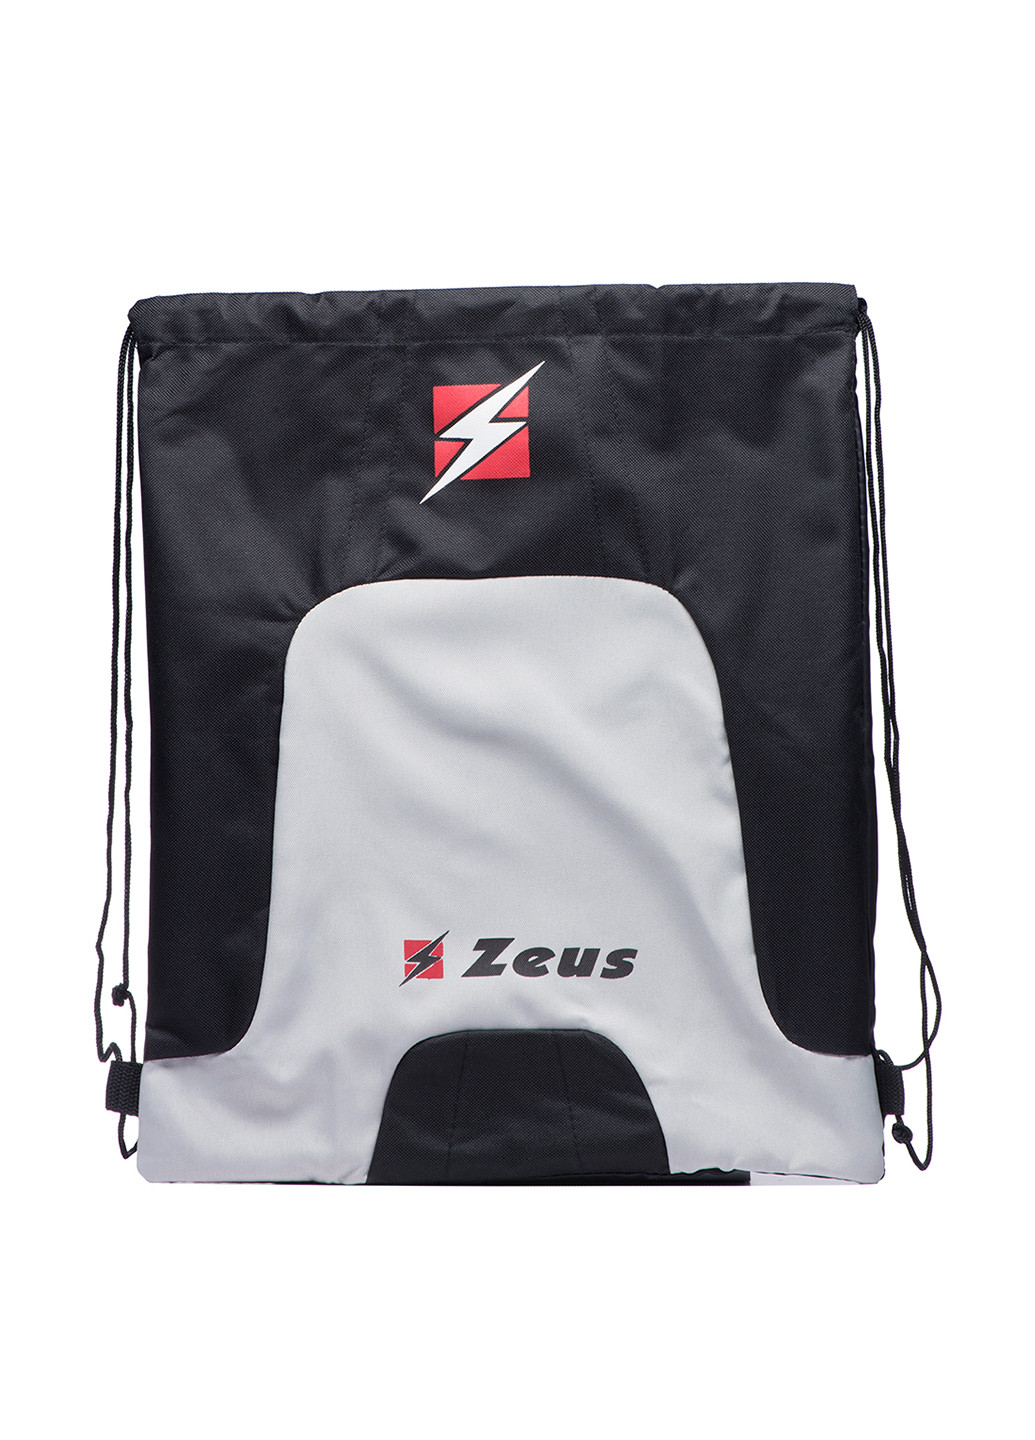 Рюкзак Zeus логотип комбинированный спортивный